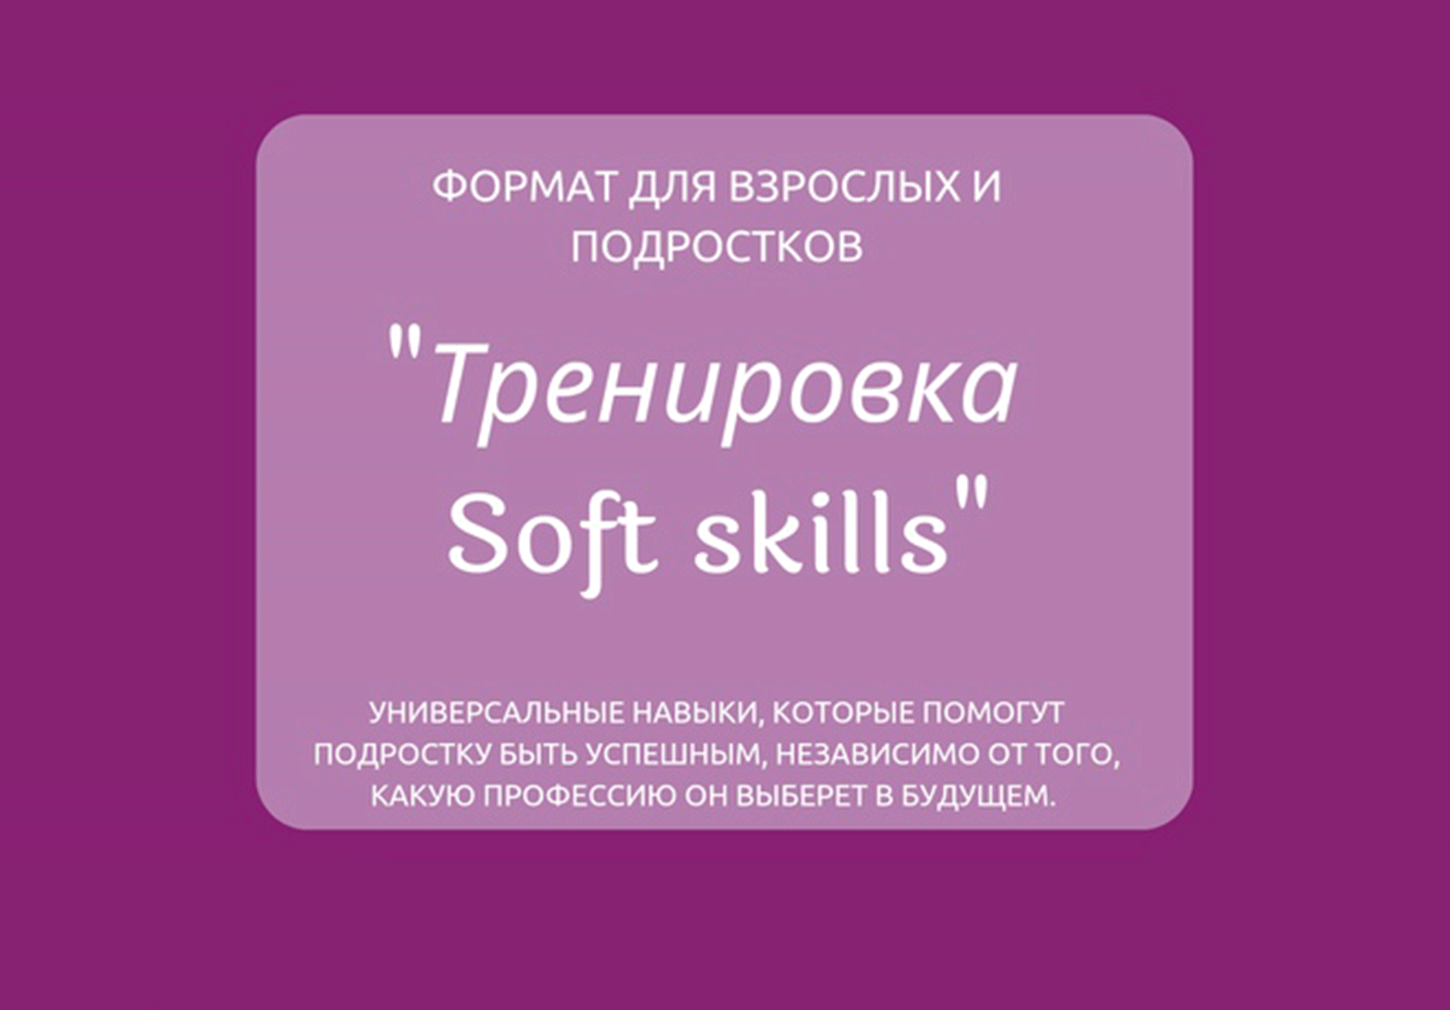 Тренировка "Soft skills" для подростков